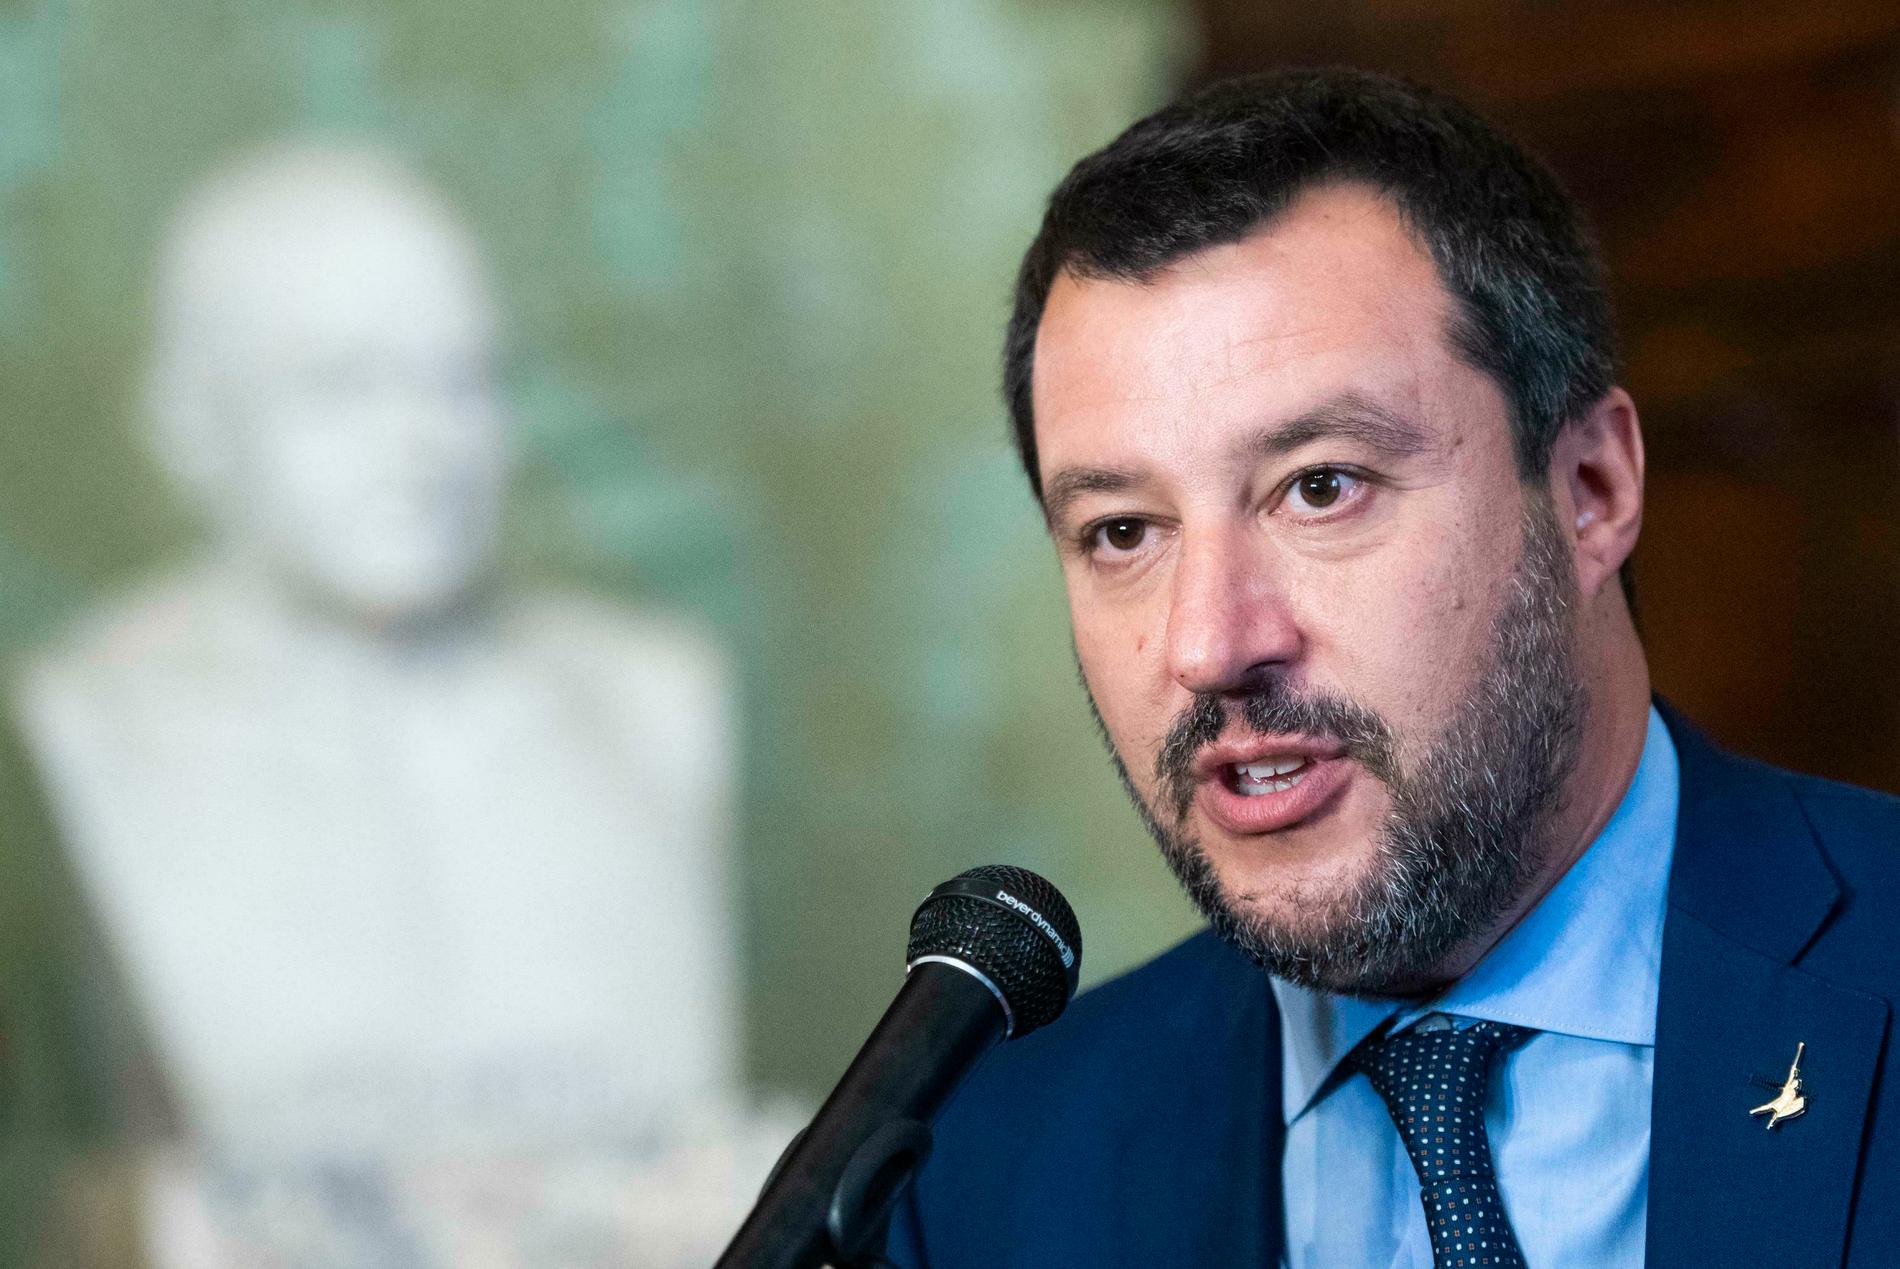  Italiens högerpopulistiske före detta ledare Matteo Salvini har fått se sina opinionssiffror dala kraftigt.